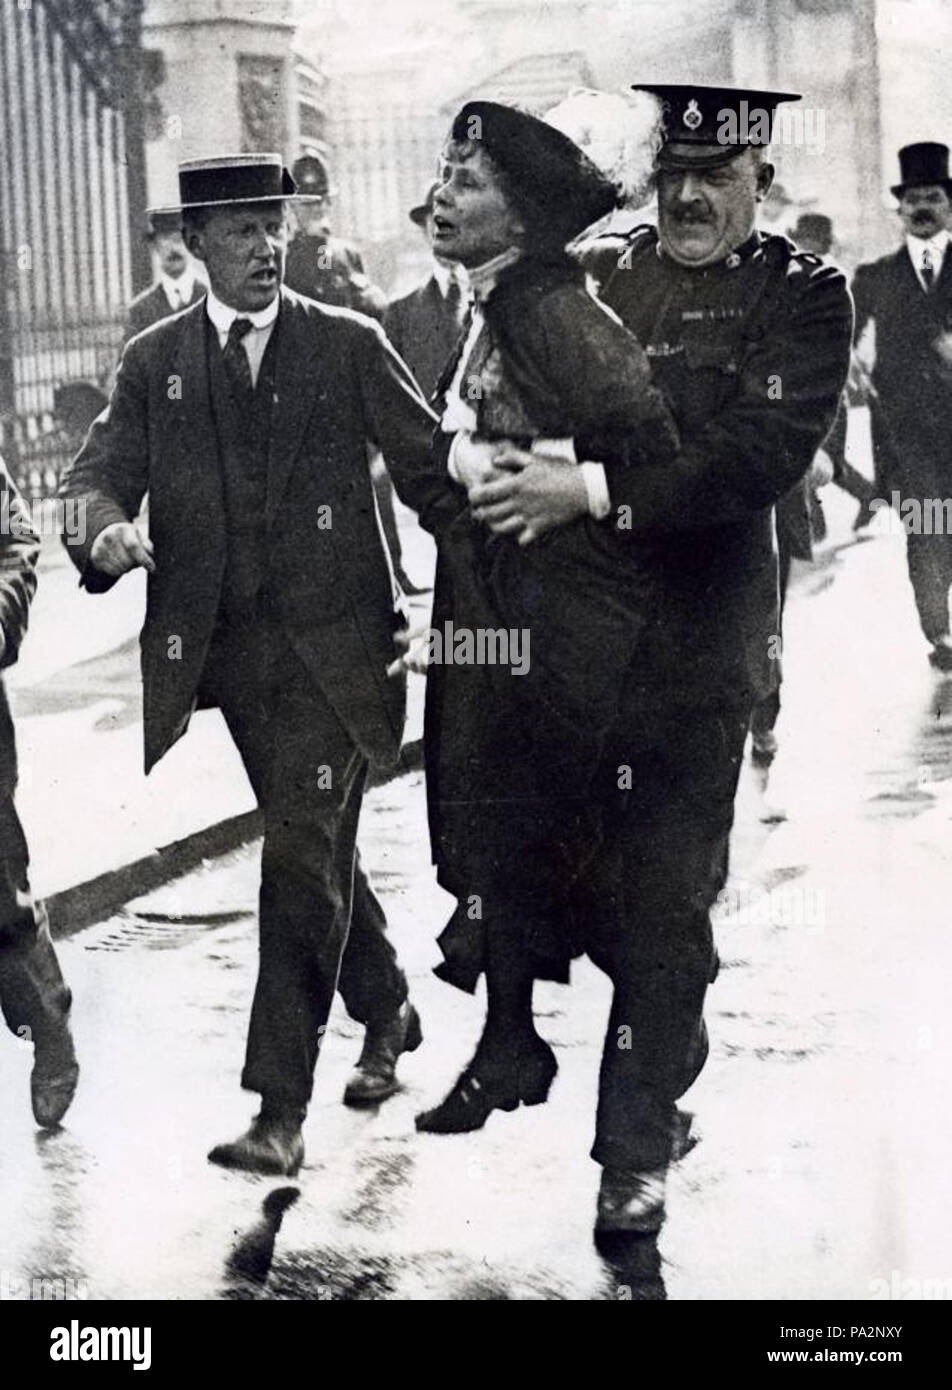 Vrouwenkiesrecht. Arrestatie van suffragette Emmeline Pankhurst sterben politieagent weggedragen wordt Door een van het hek van Buckingham Palace tijdens een voor demonstratie vrouwenemancipatie. Beccles, Engeland, [1907-1914]. Suffragette (rechte Bewegung der Frauen) Emmeline Pankhurst verhaftet nach Protest in der Nähe des Buckingham Palace. Beccles, Engeland, [1907-1914]. 619 Emmeline Pankhurst verhaftet 1907-1914 Stockfoto